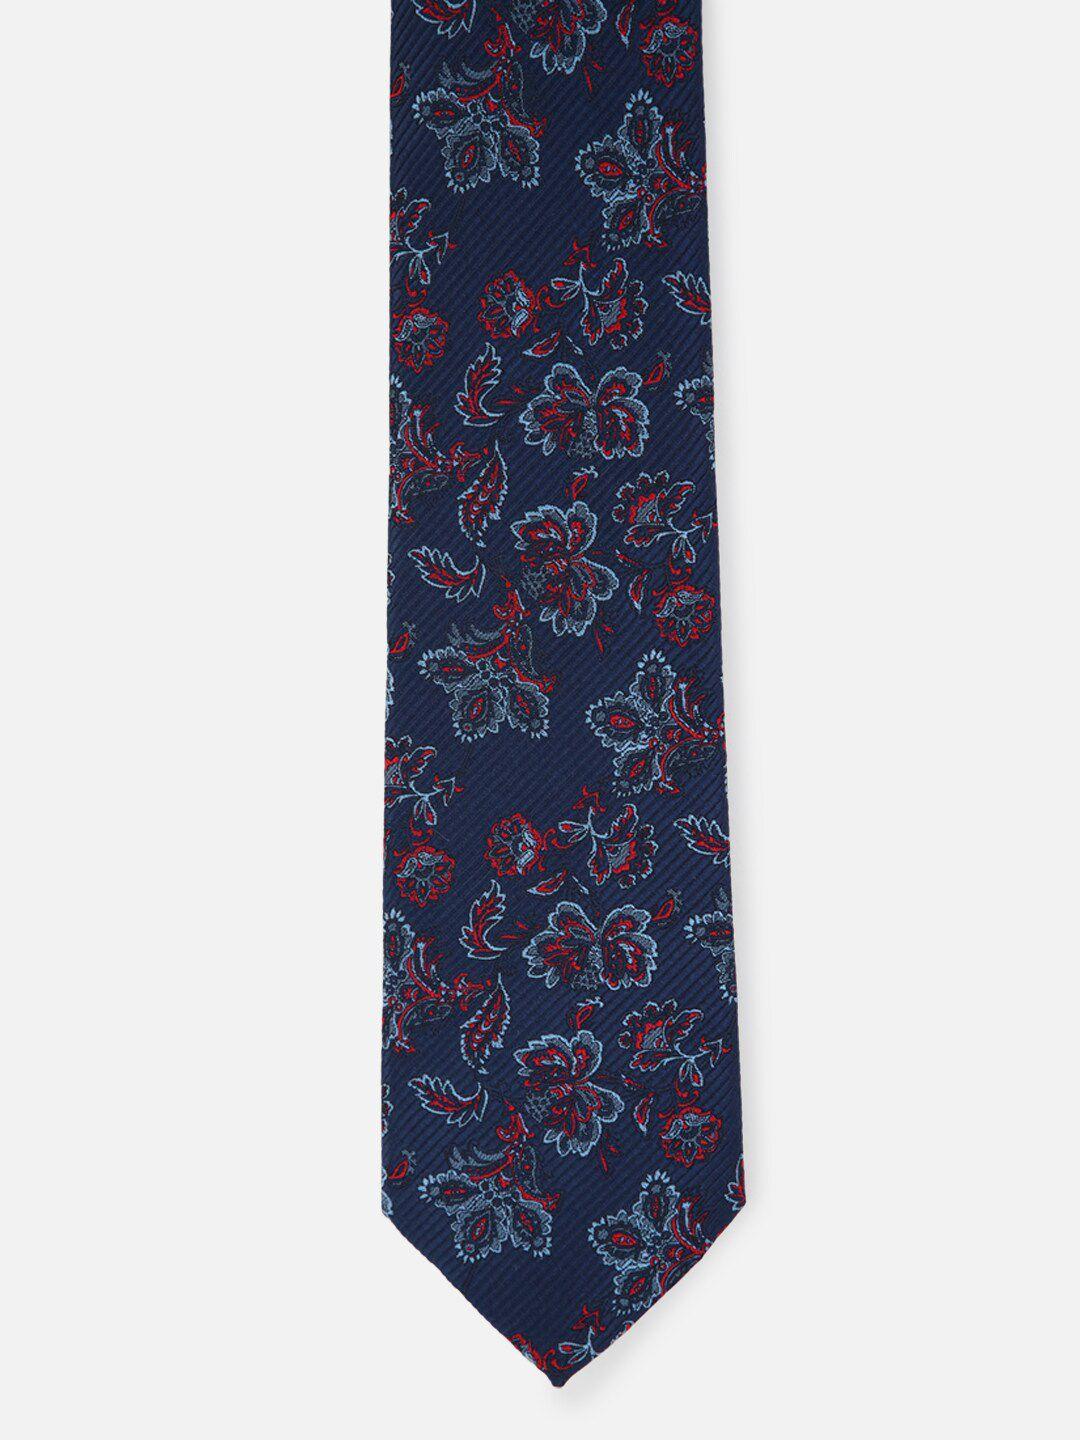 louis philippe men navy blue woven design ascot tie